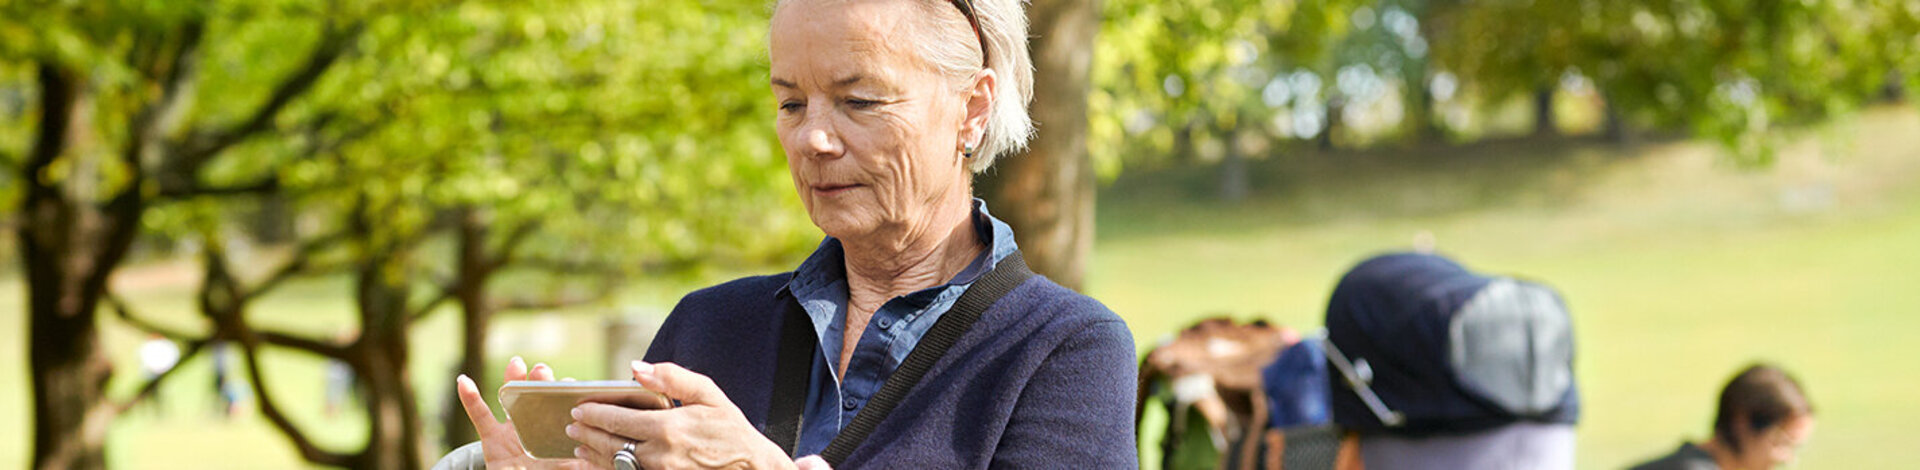 Eine ältere Dame sitzt im Park auf einer Bank und schaut sich Informationen auf ihrem Smartphone an.